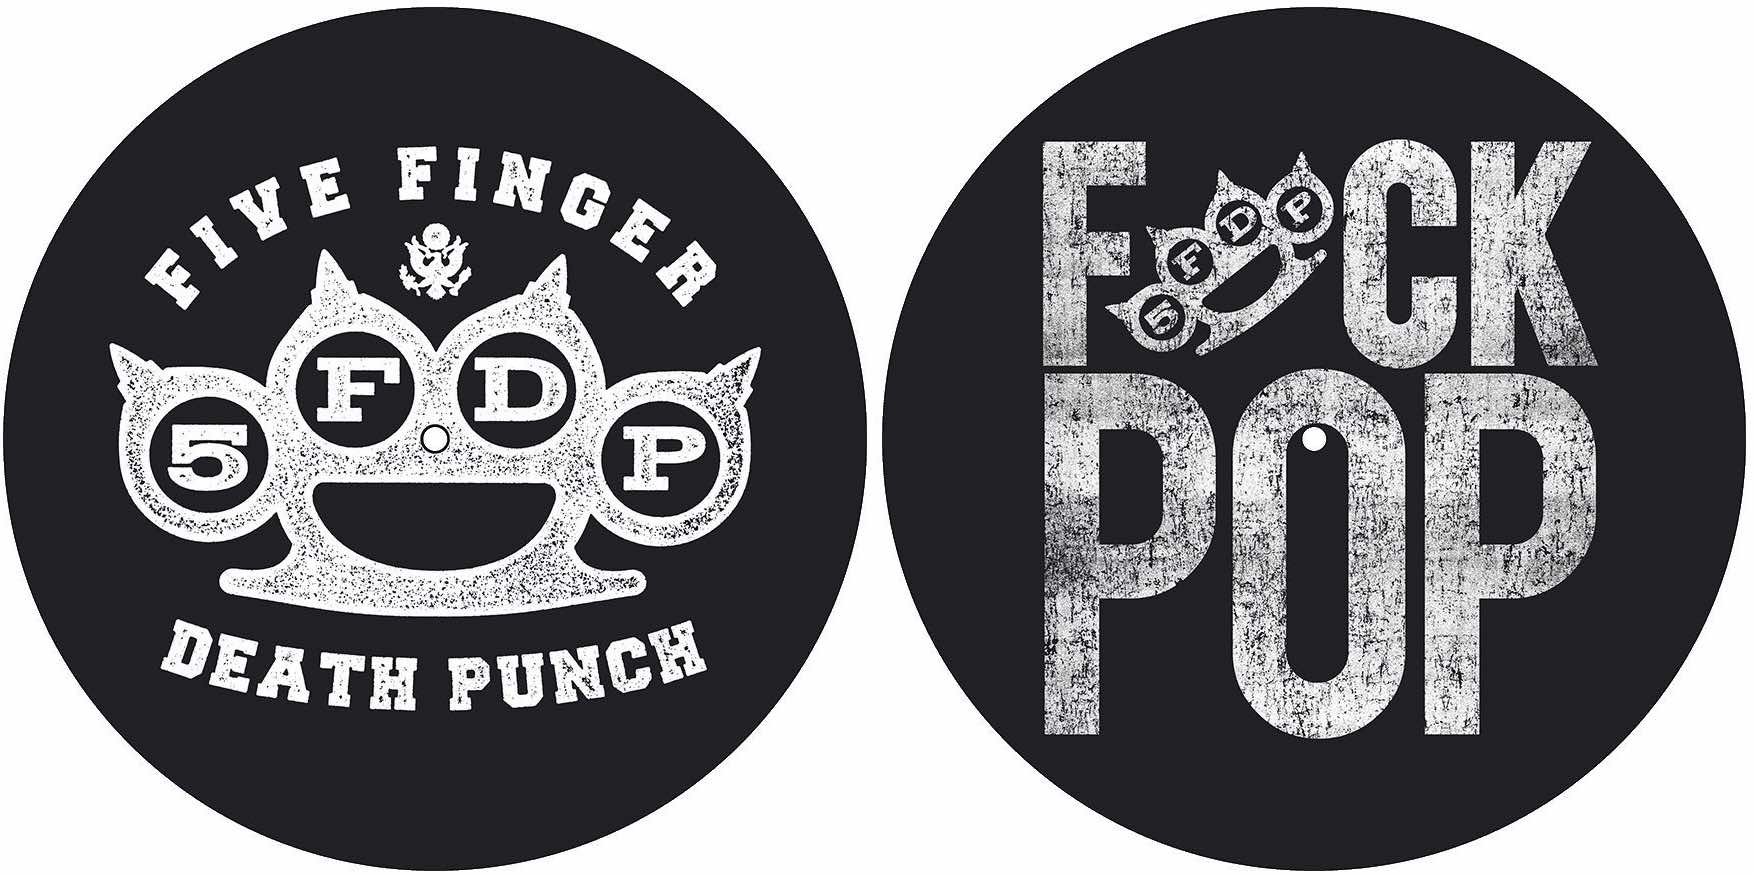 Фото № 1 Turntable Slipmats Five Finger Death Punch (Knuckle / Fuck Pop) - цены, наличие, отзывы в интернет-магазине